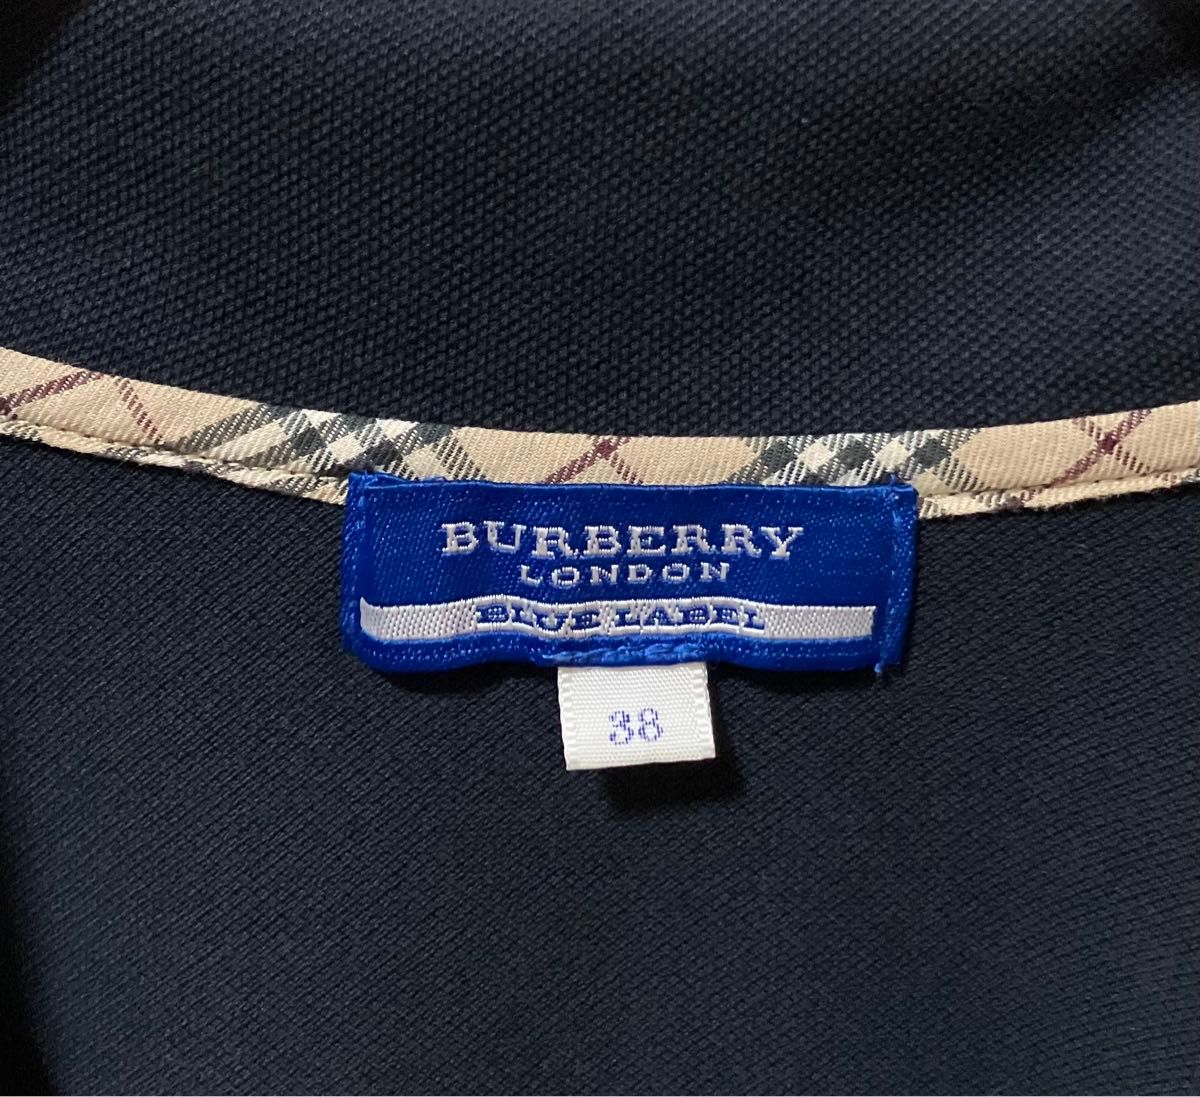 BURBERRY LONDON BLUE LABEL バーバリー ブルーレーベル  刺繍ロゴポロシャツ